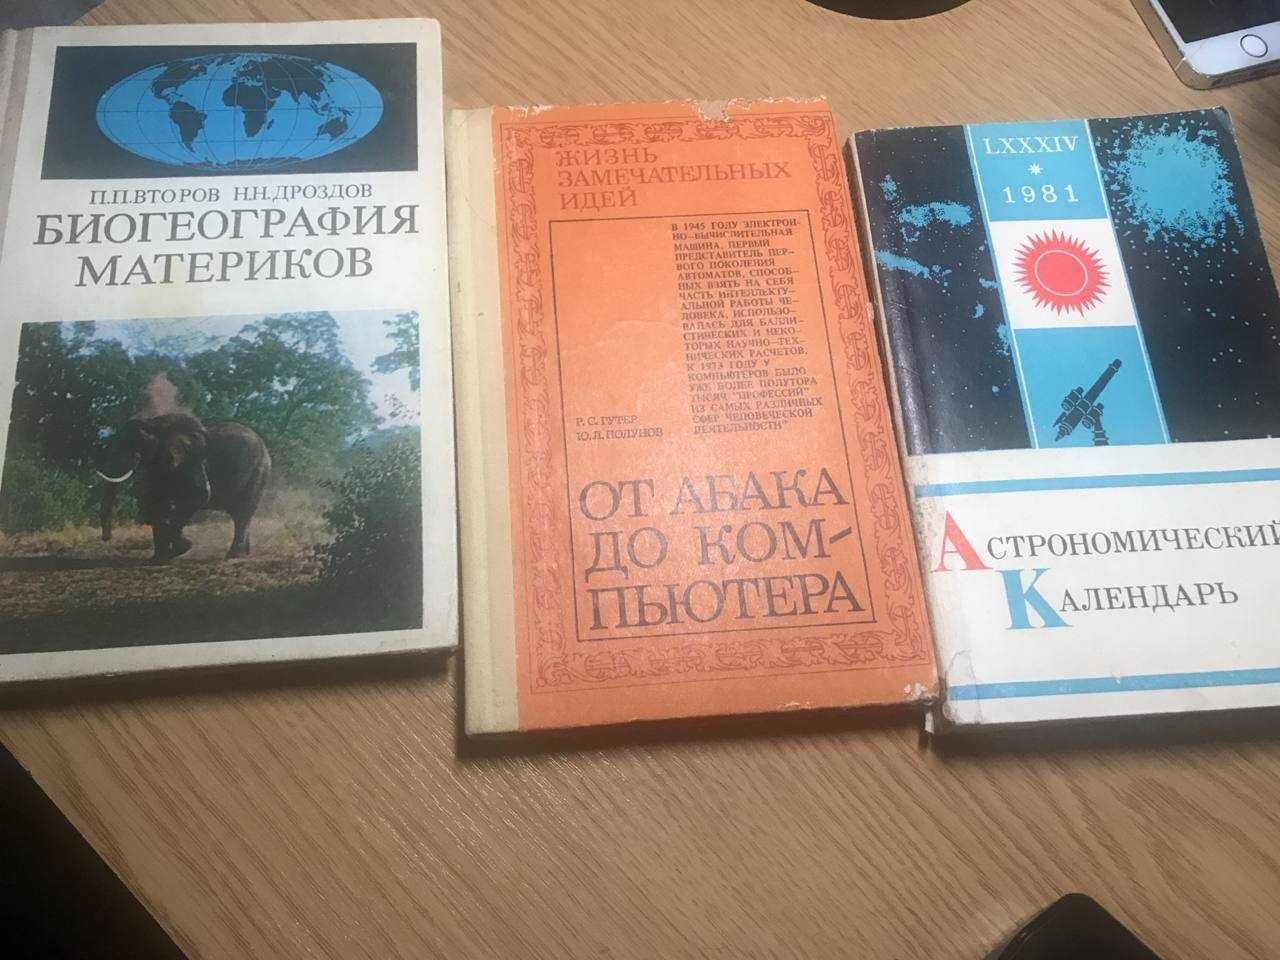 Різноманітна довідкова та навчальна література російською.